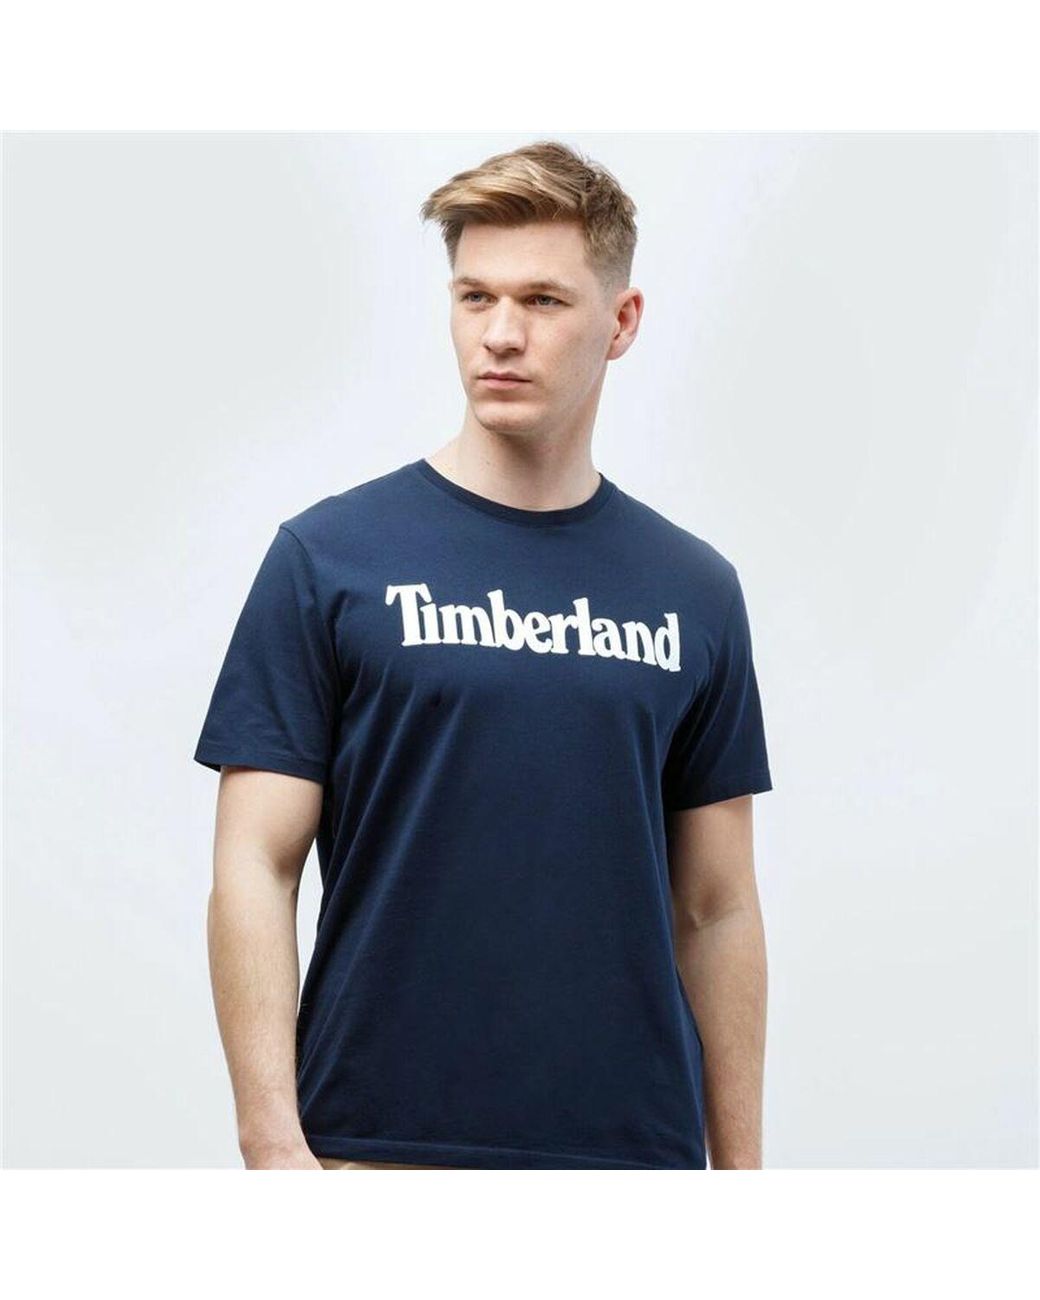 Timberland T-shirt Kennebec Linear Navy Blue Men for Men | Lyst